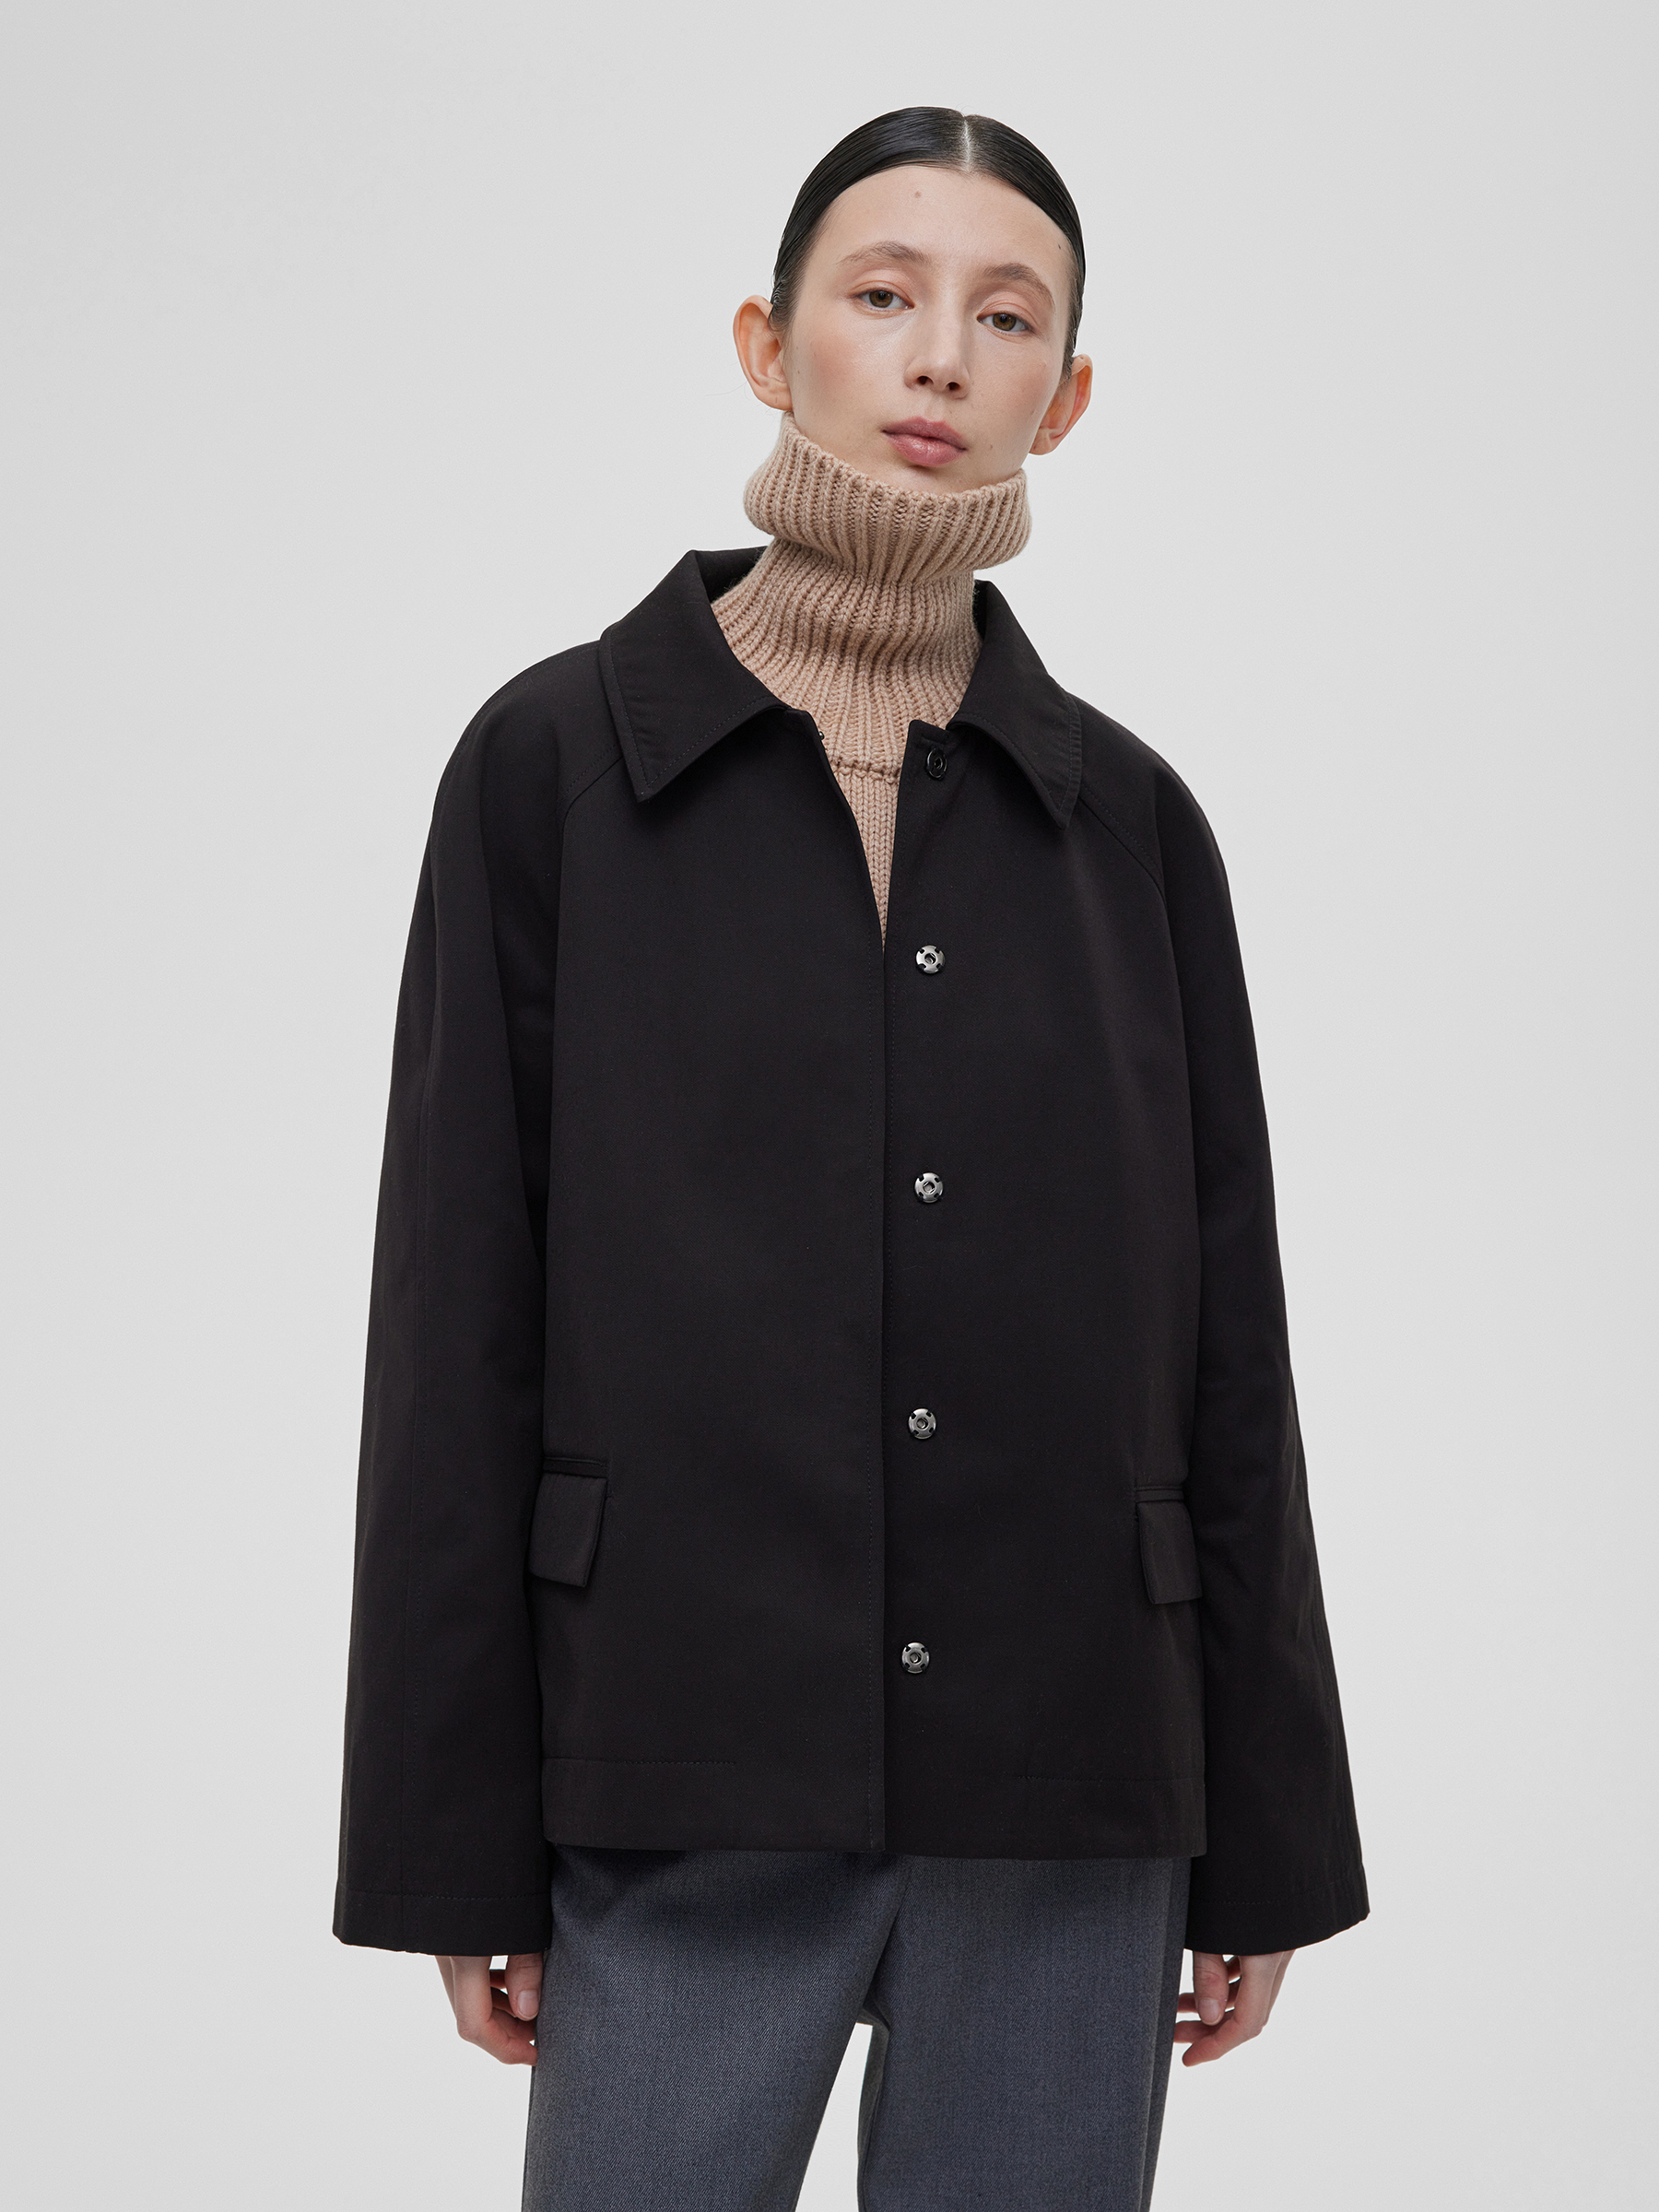 Куртка женская из хлопка на кнопках, цвет – черный женская куртка с отложным воротником с камуфляжным принтом и карманами на пуговицах осенняя куртка с длинным рукавом 2021